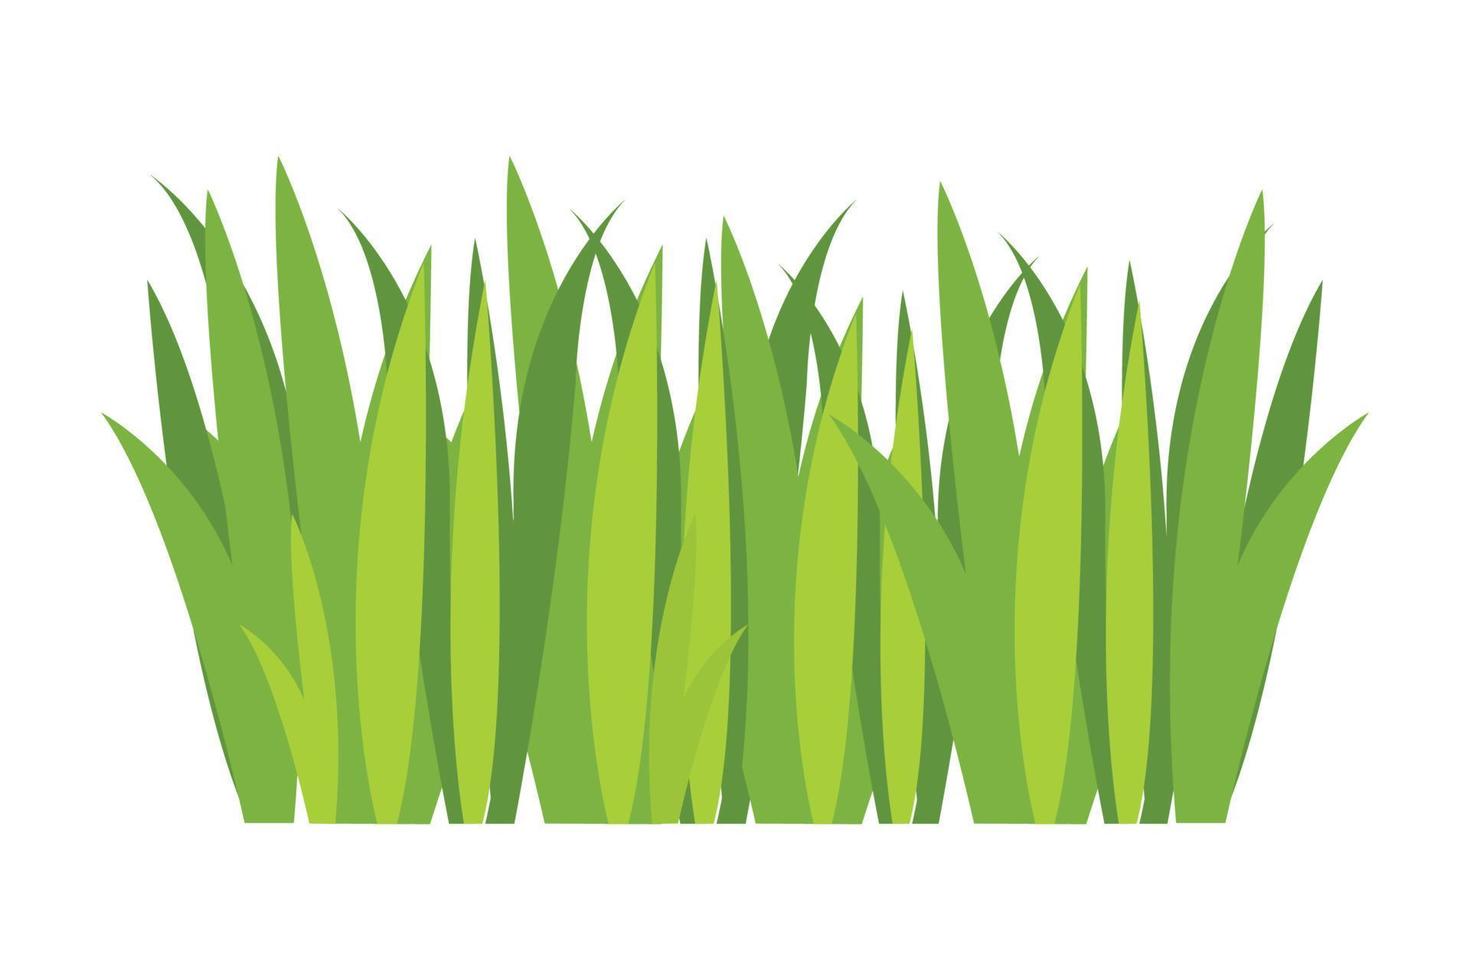 grön gräs illustration. grön gräsmatta, blomma, naturlig gränser, örter. platt vektor illustrationer för vår, sommar, natur, jord, växter begrepp.